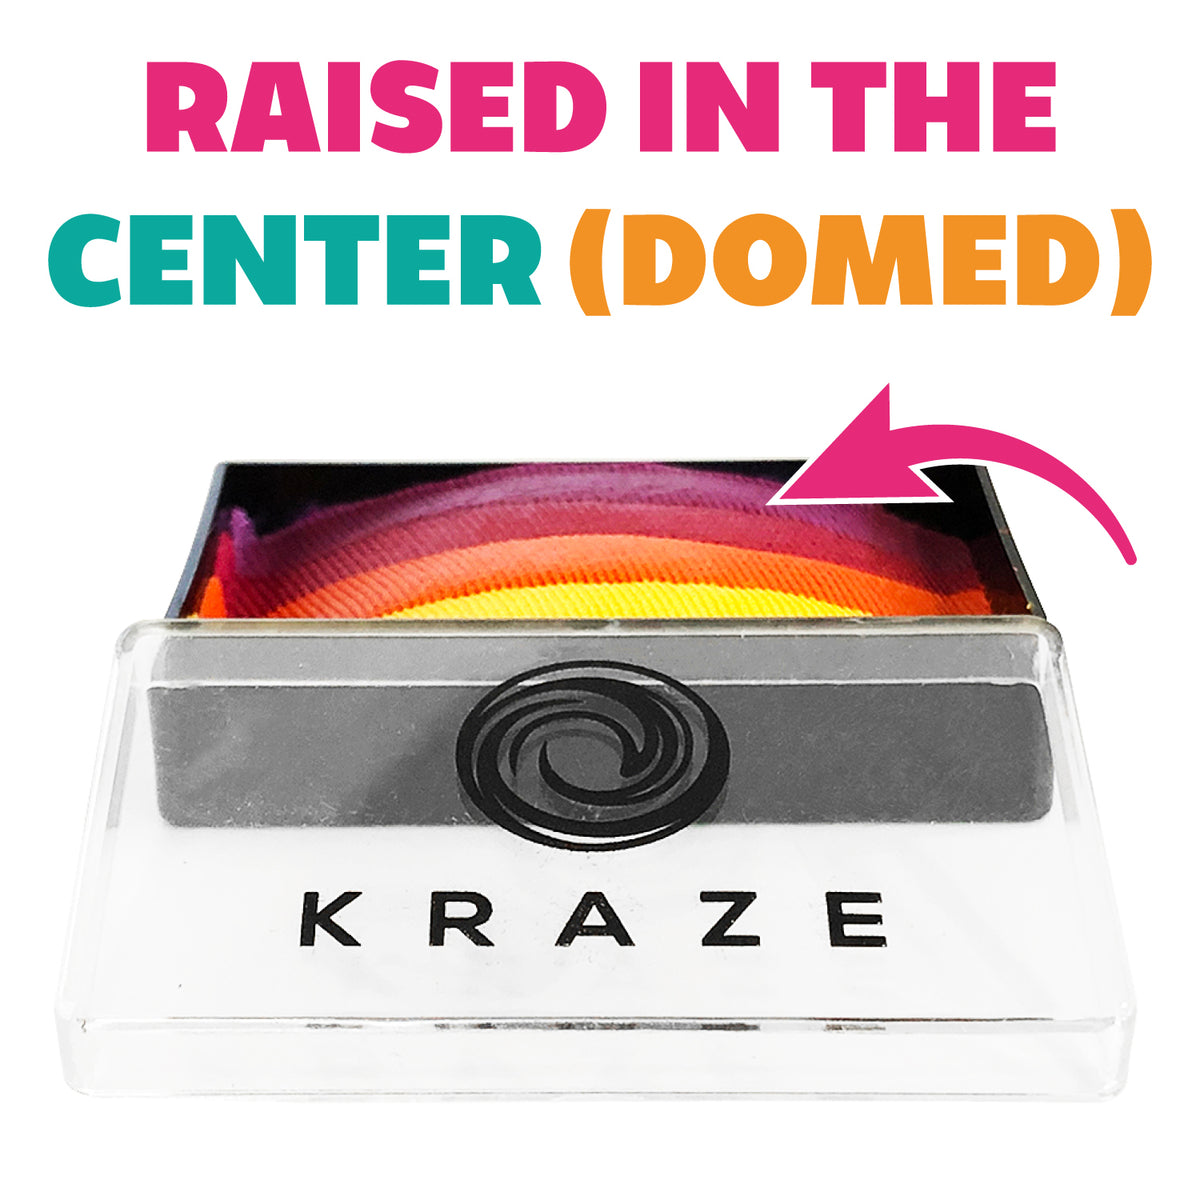 Kraze FX Domed Pearl One Stroke Cake - Unicorn Shimmer (25 gm)